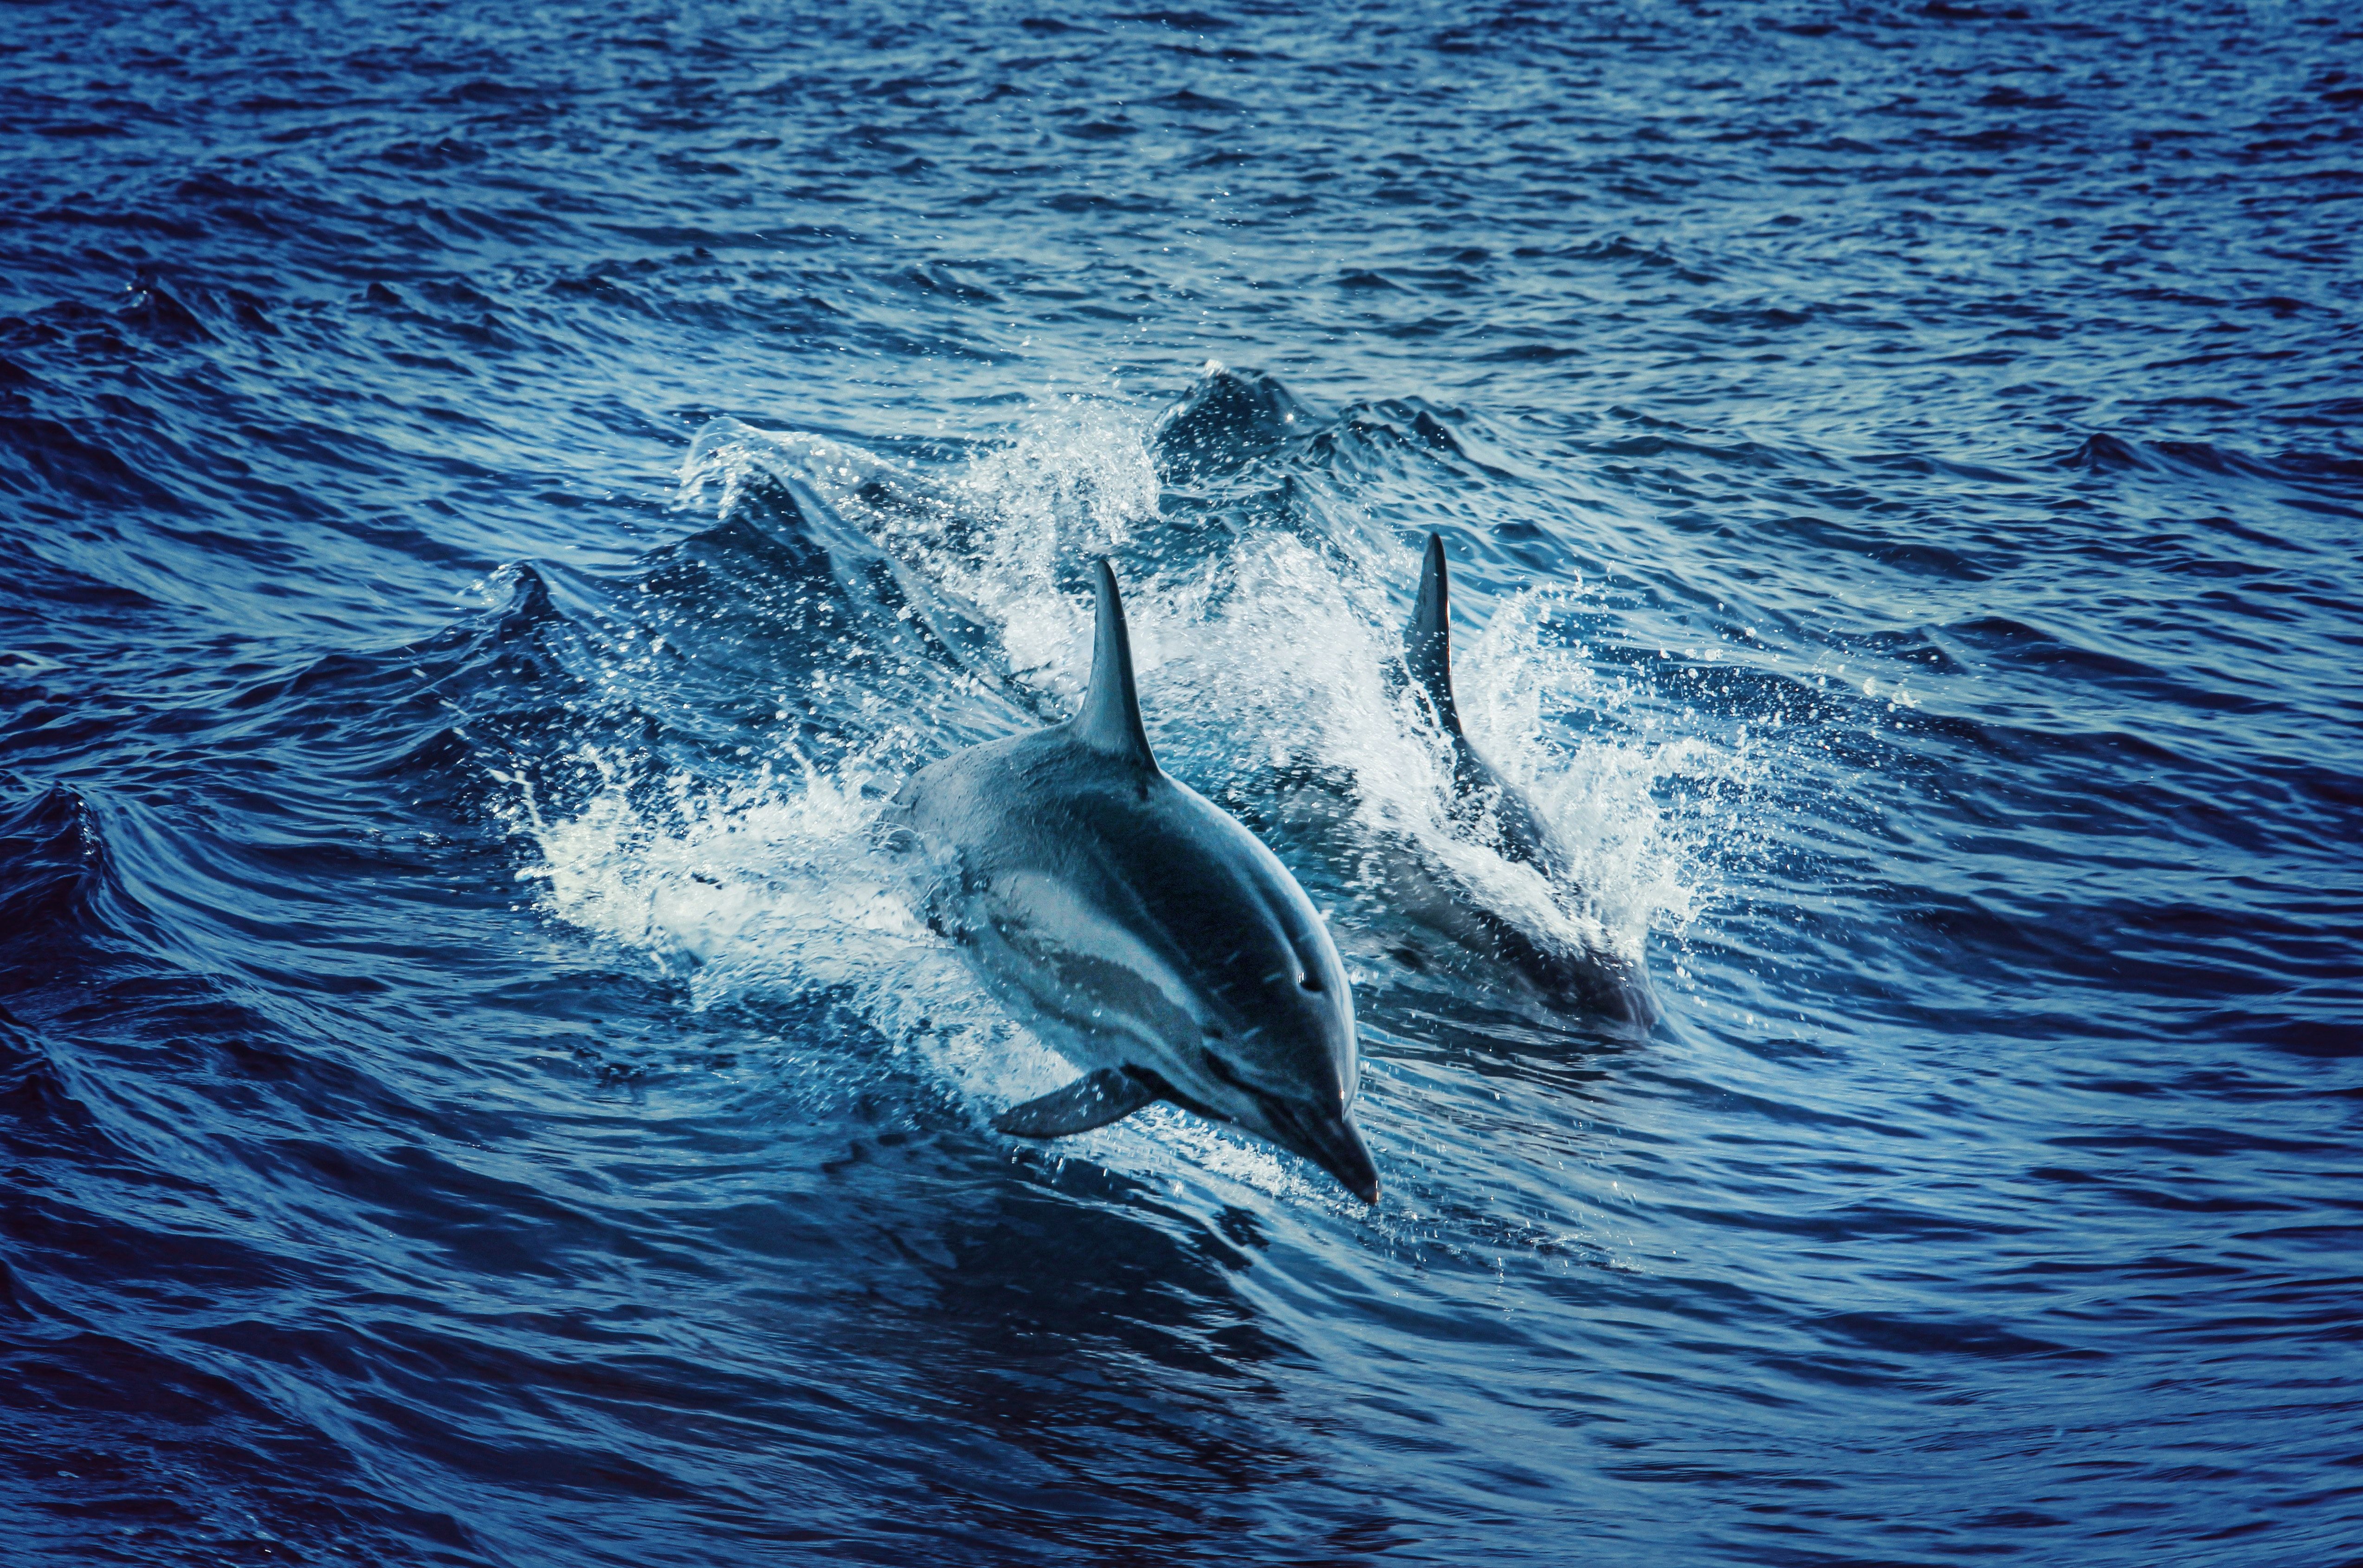  Delfine Hintergrundbild 5092x3379. Delfine Bilder Und Fotos · Kostenlos Downloaden · Stock Fotos